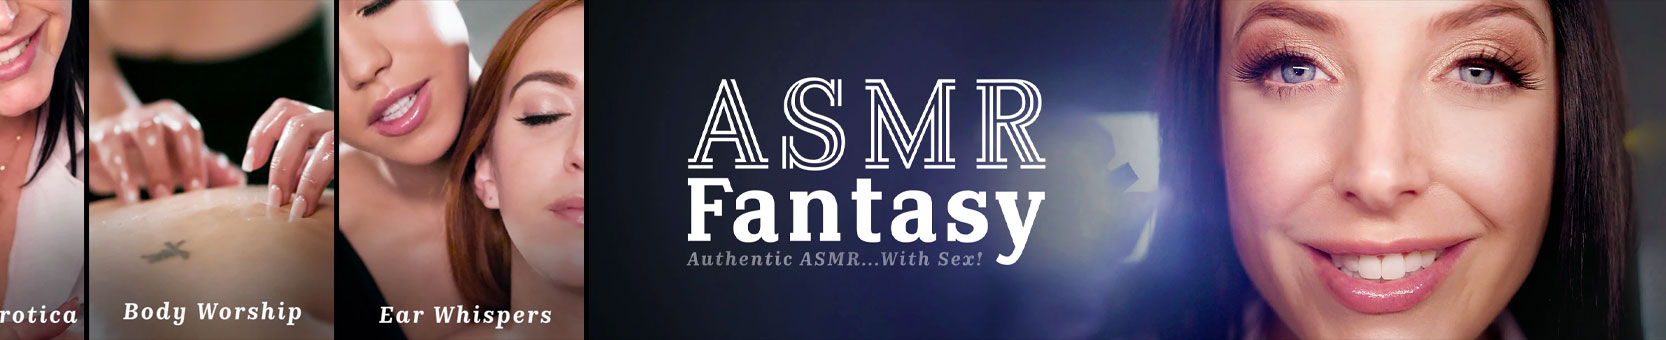 ASMR Fantasy бесплатные видео